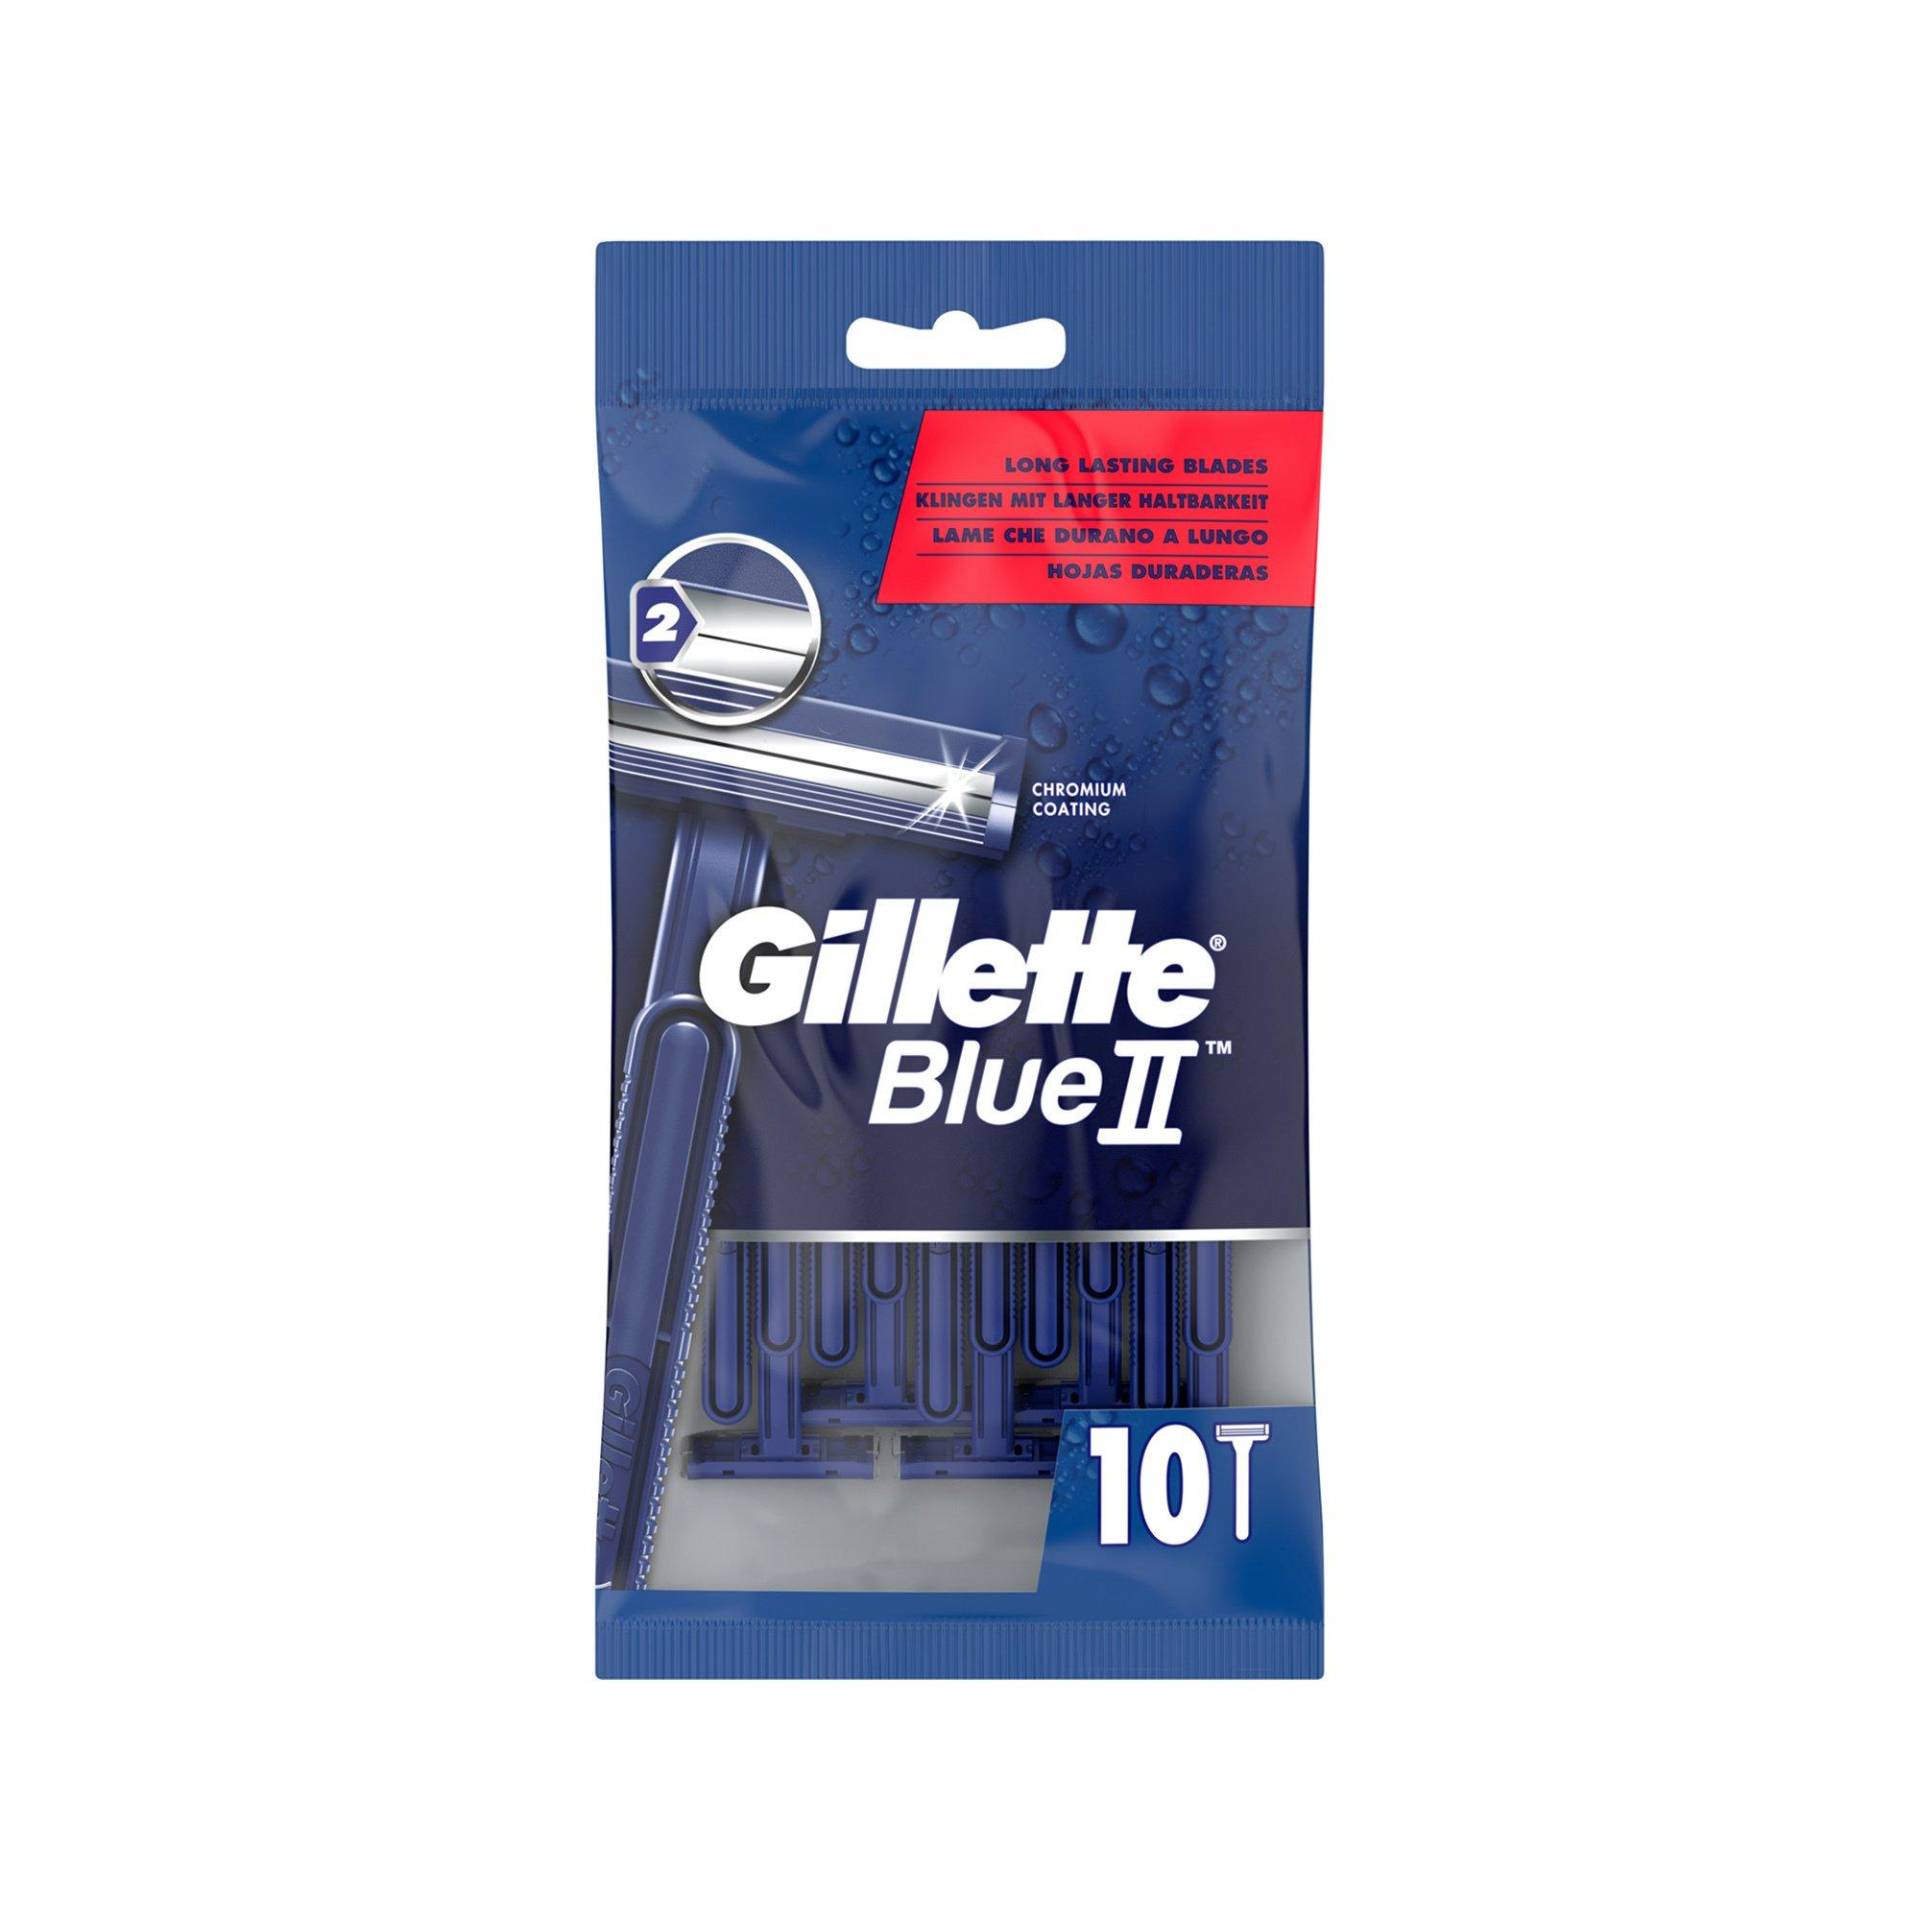 Blueii Einwegrasierer Für Männer X 10 Damen  10 pieces von Gillette